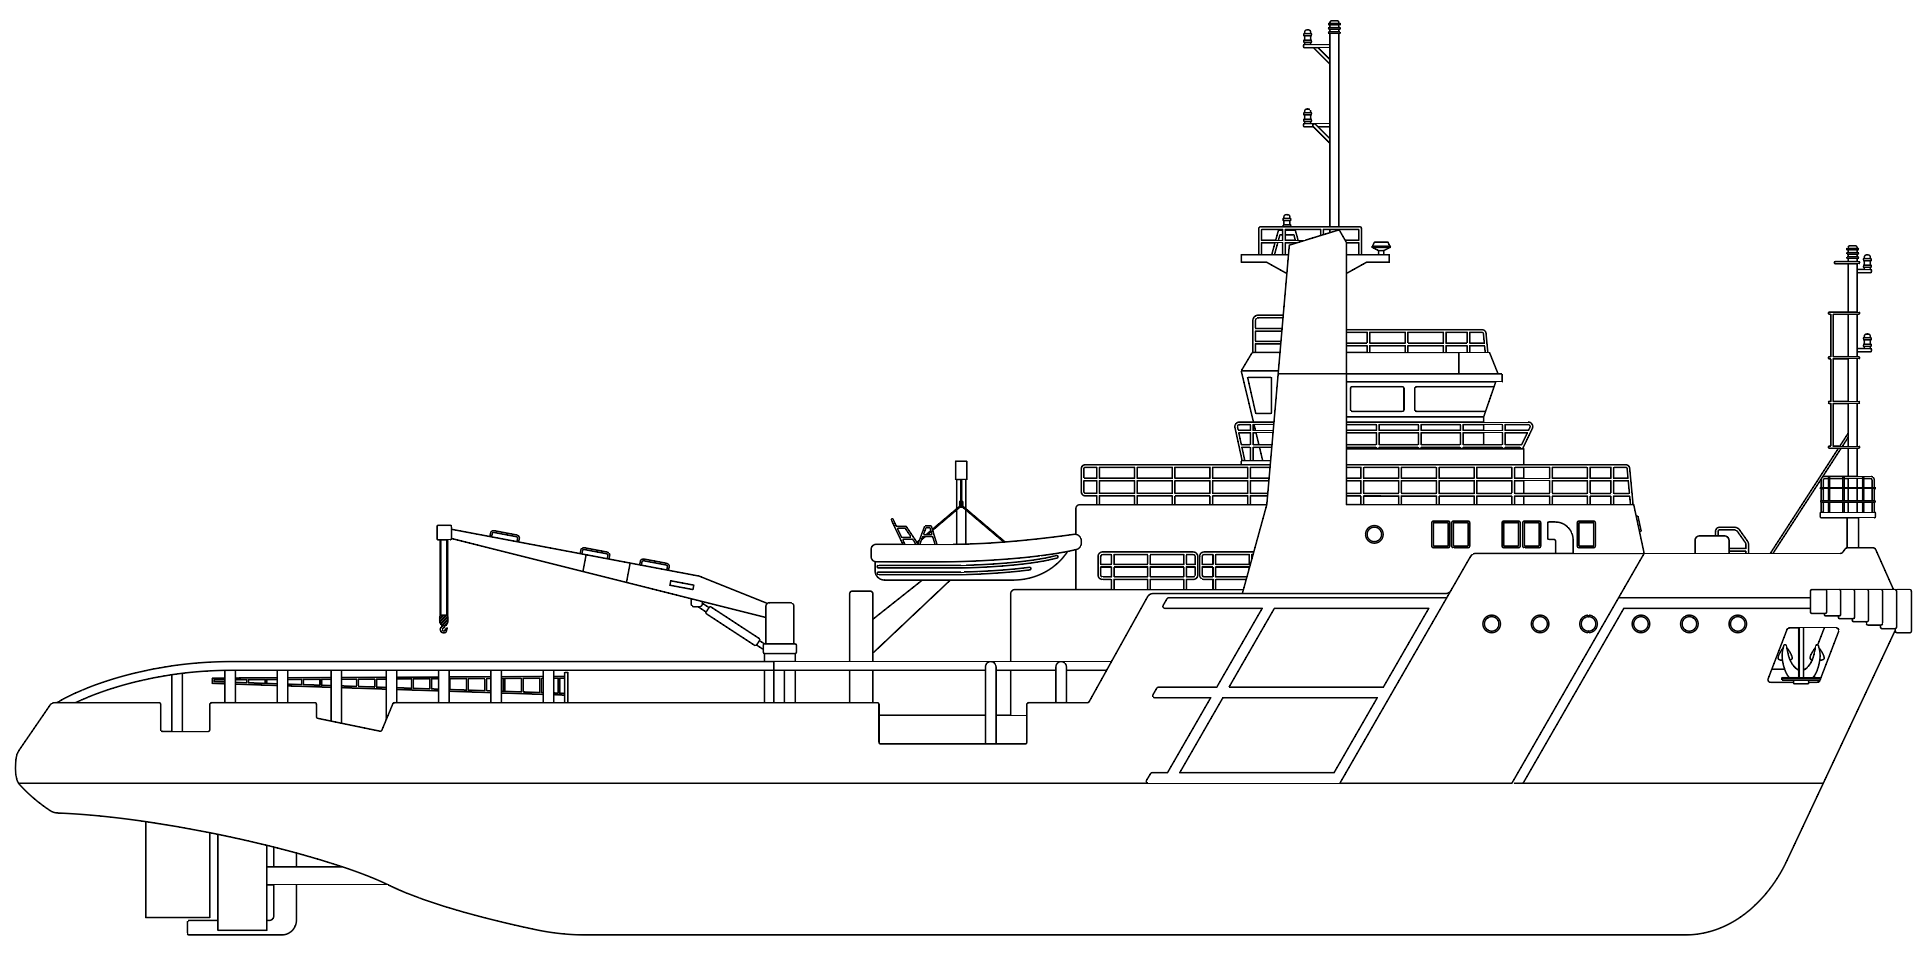 Schema bateau profil